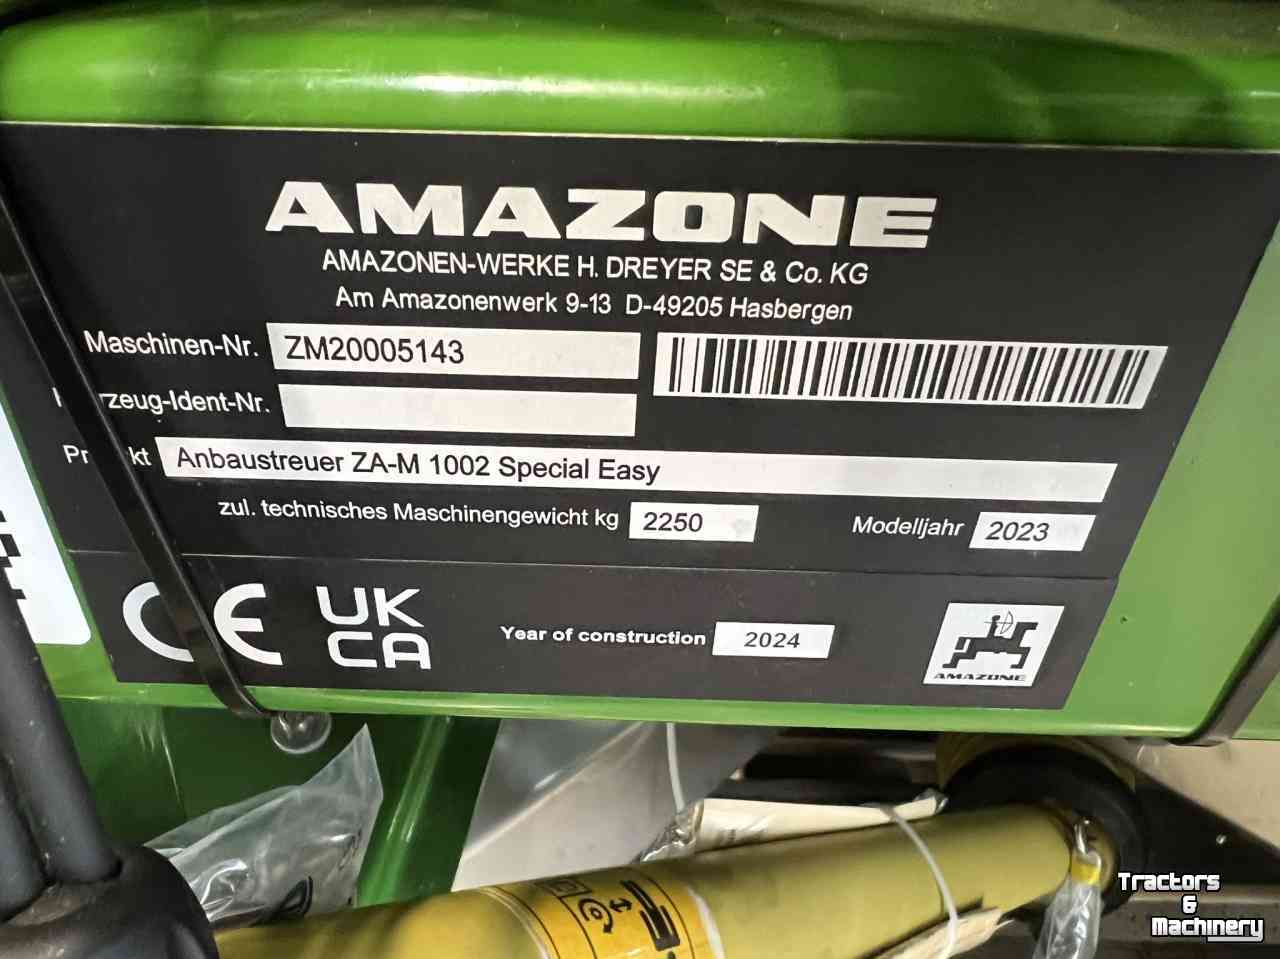 Distributeur d&#8216;engrais Amazone ZA-M 1002 Special Easy